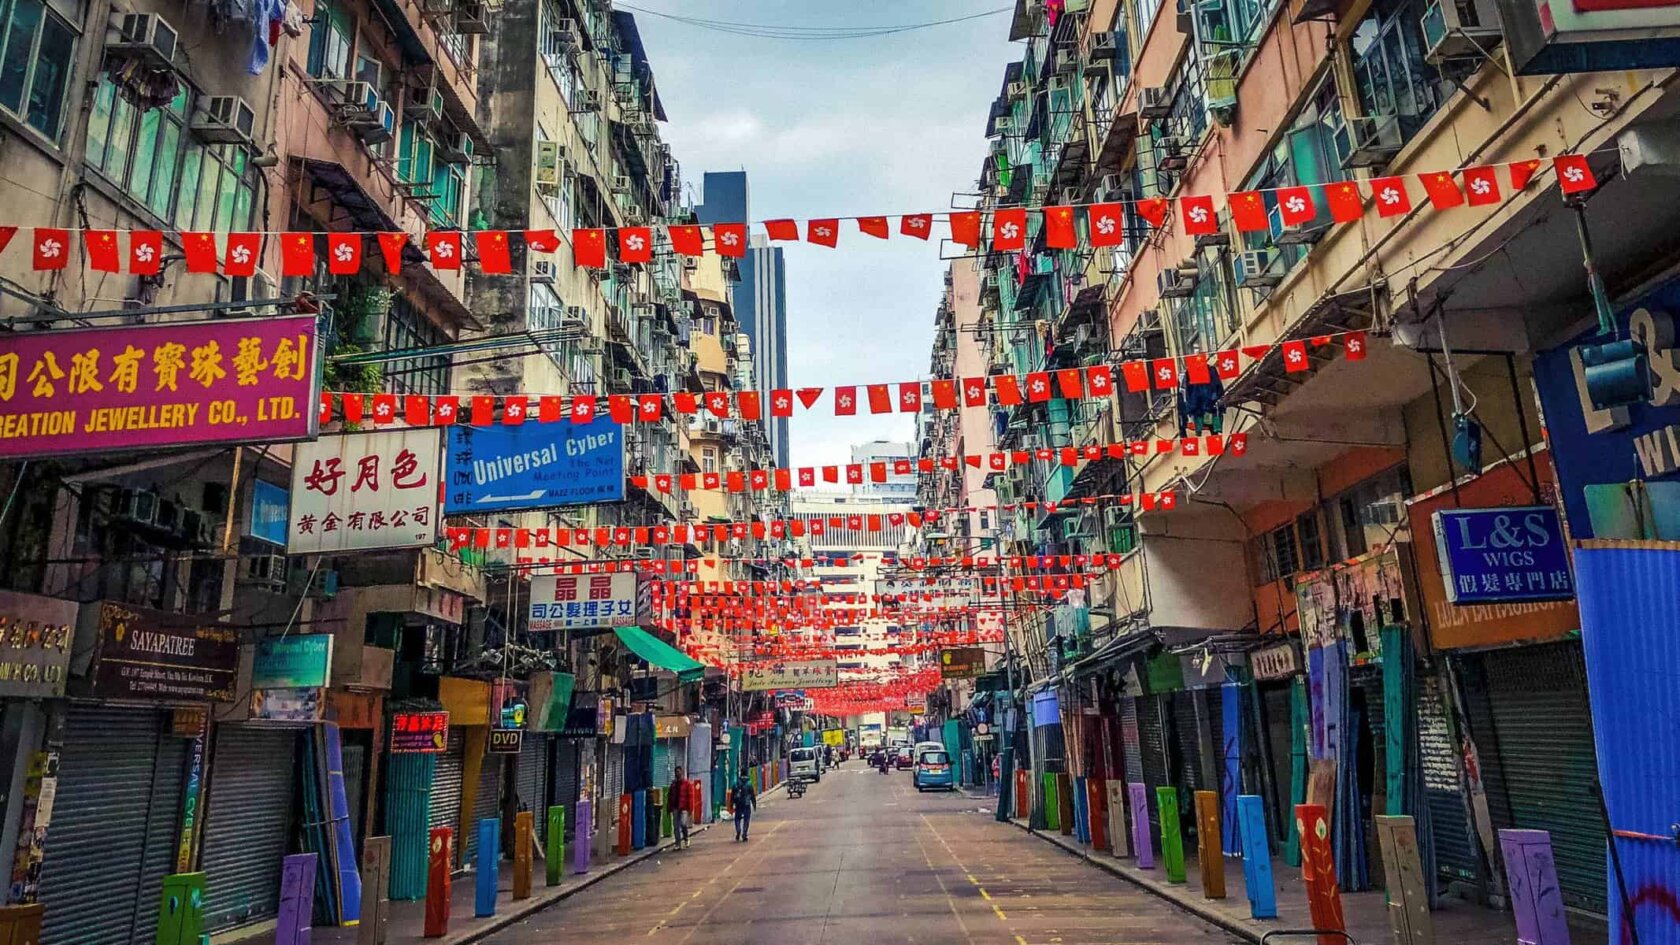 Hong Kong streets